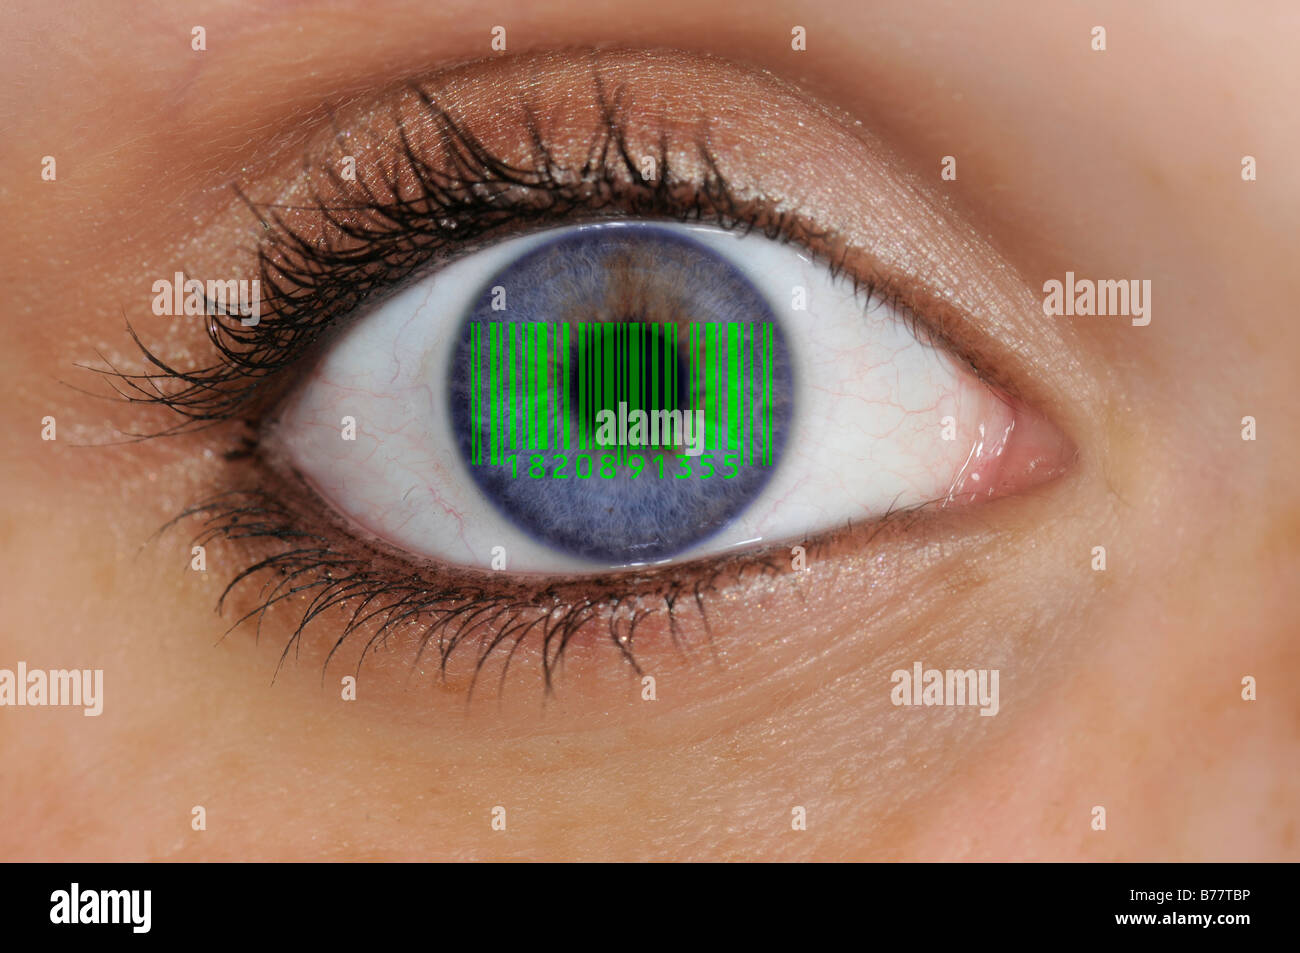 Primo piano di un occhio con EAN, European Article Number, codice a barre sull'iride, simbolo per la sorveglianza di massa Foto Stock